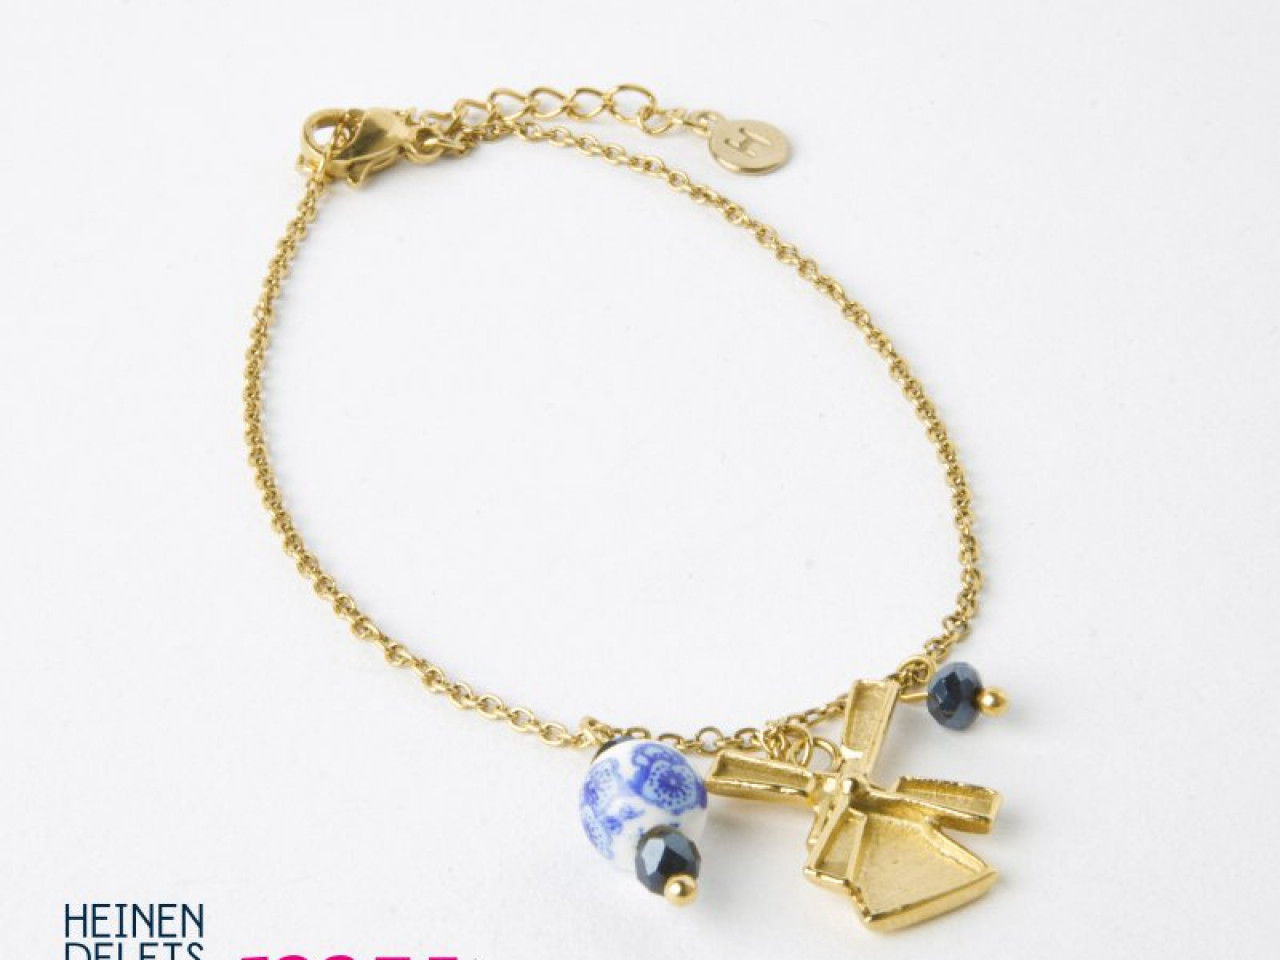 Armband molen goud sieraden van My Jewellery voor Heinen Delfts Blauw